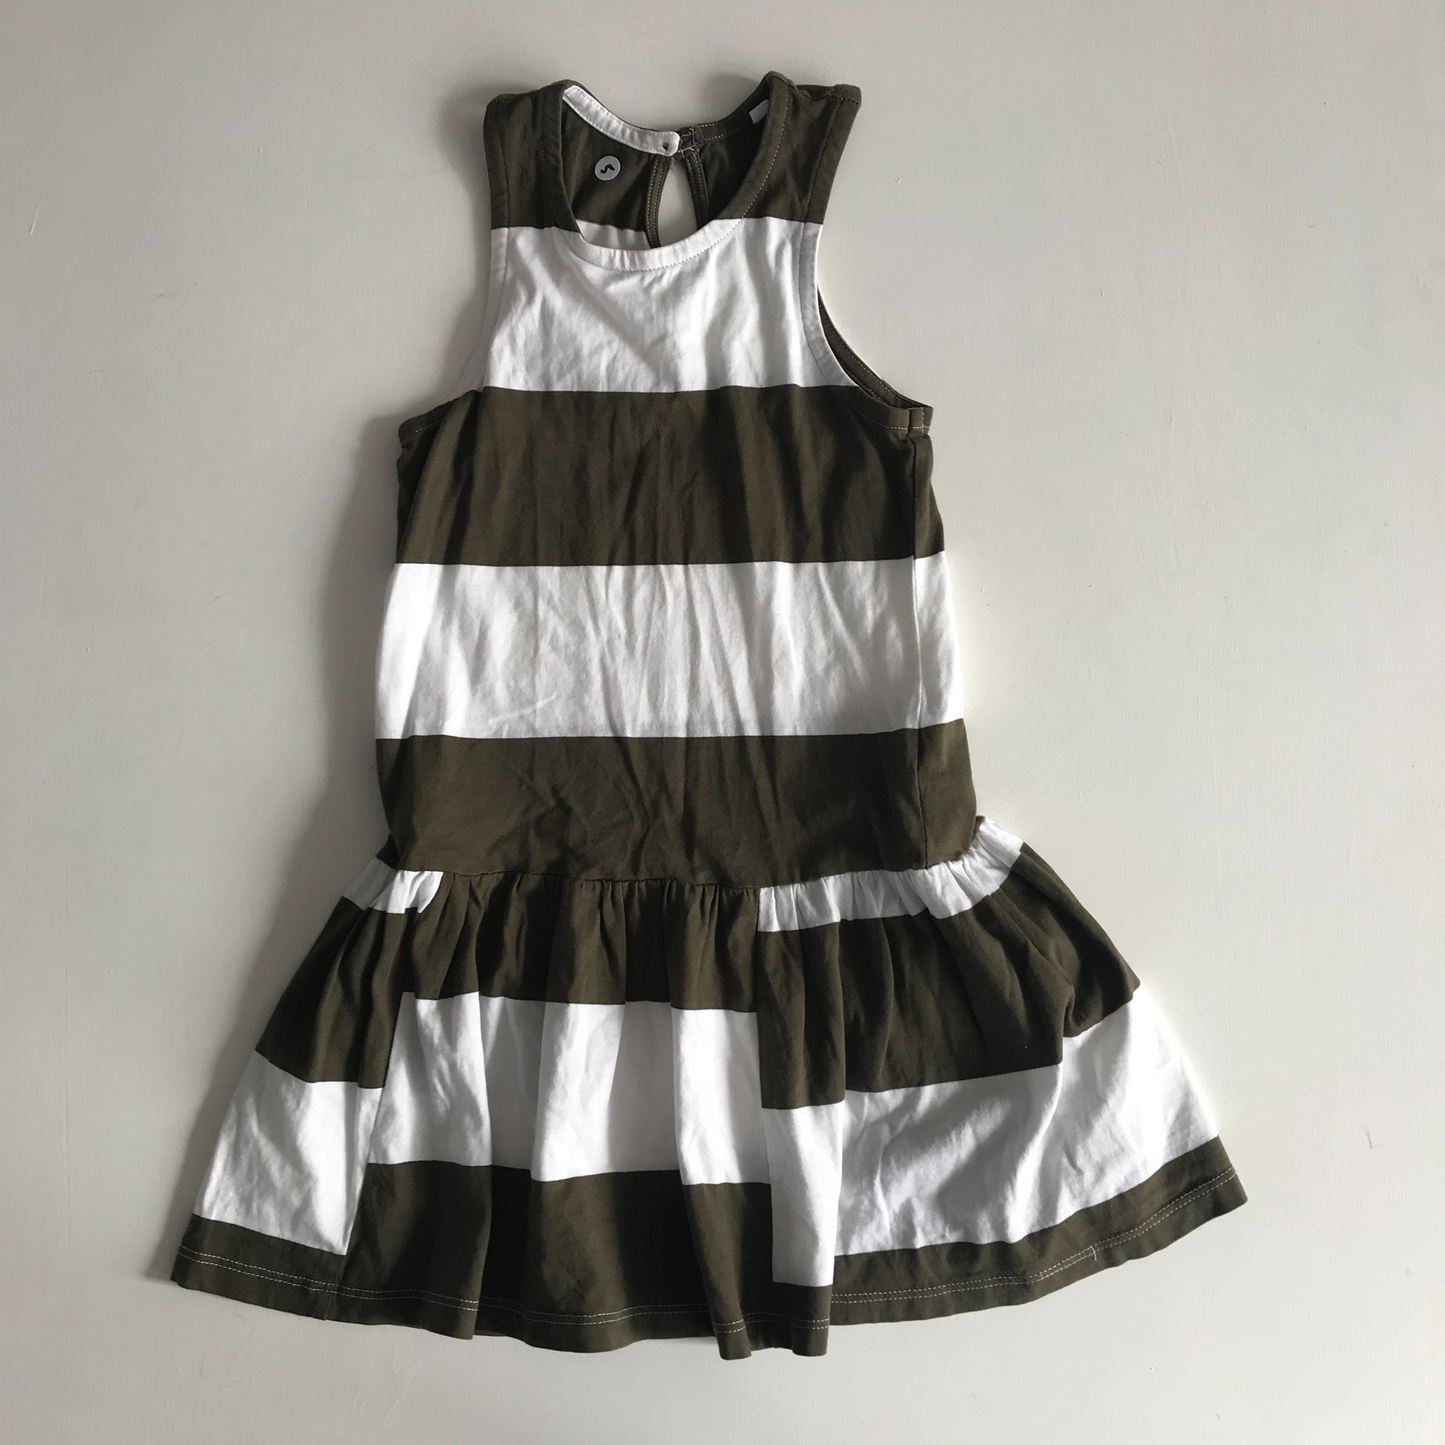 Dress - Green & White - Age 5